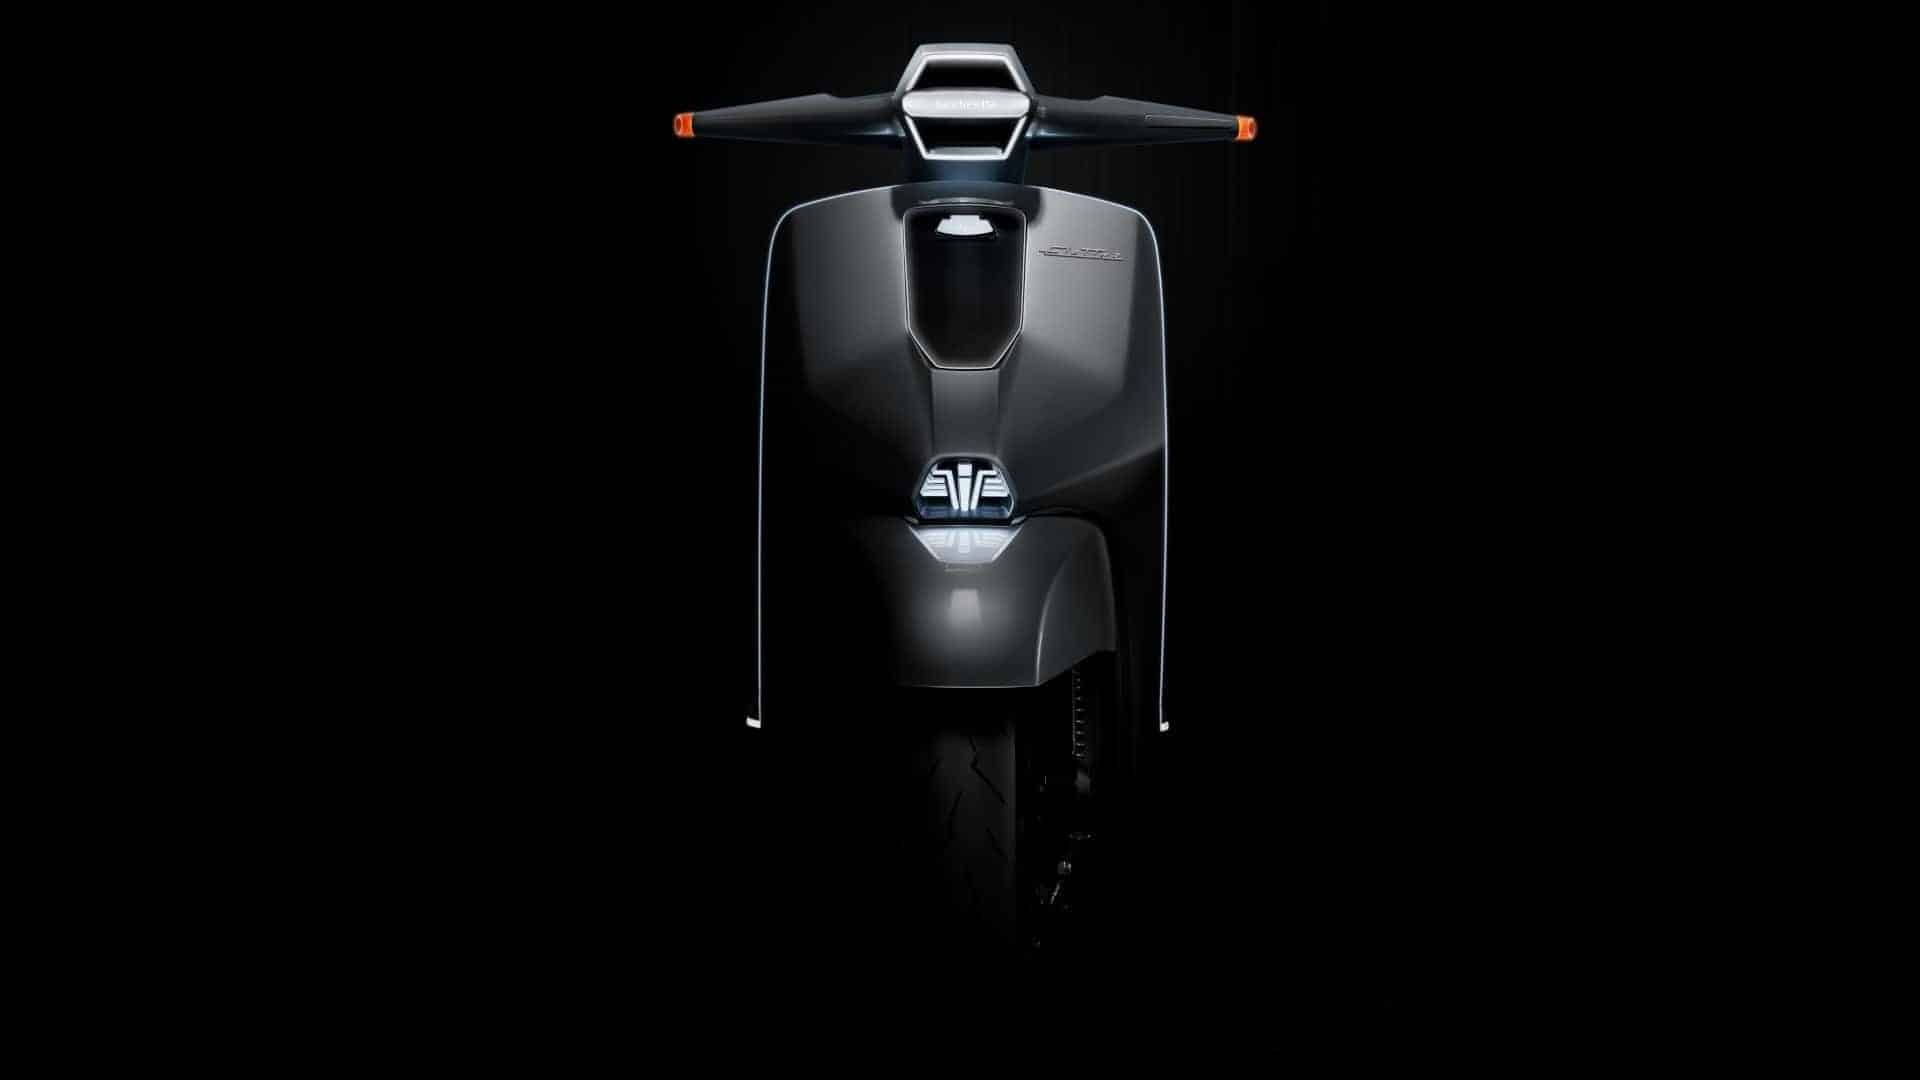 Lambretta Elettra concept: El mítico scooter italiano ahora en versión eléctrica